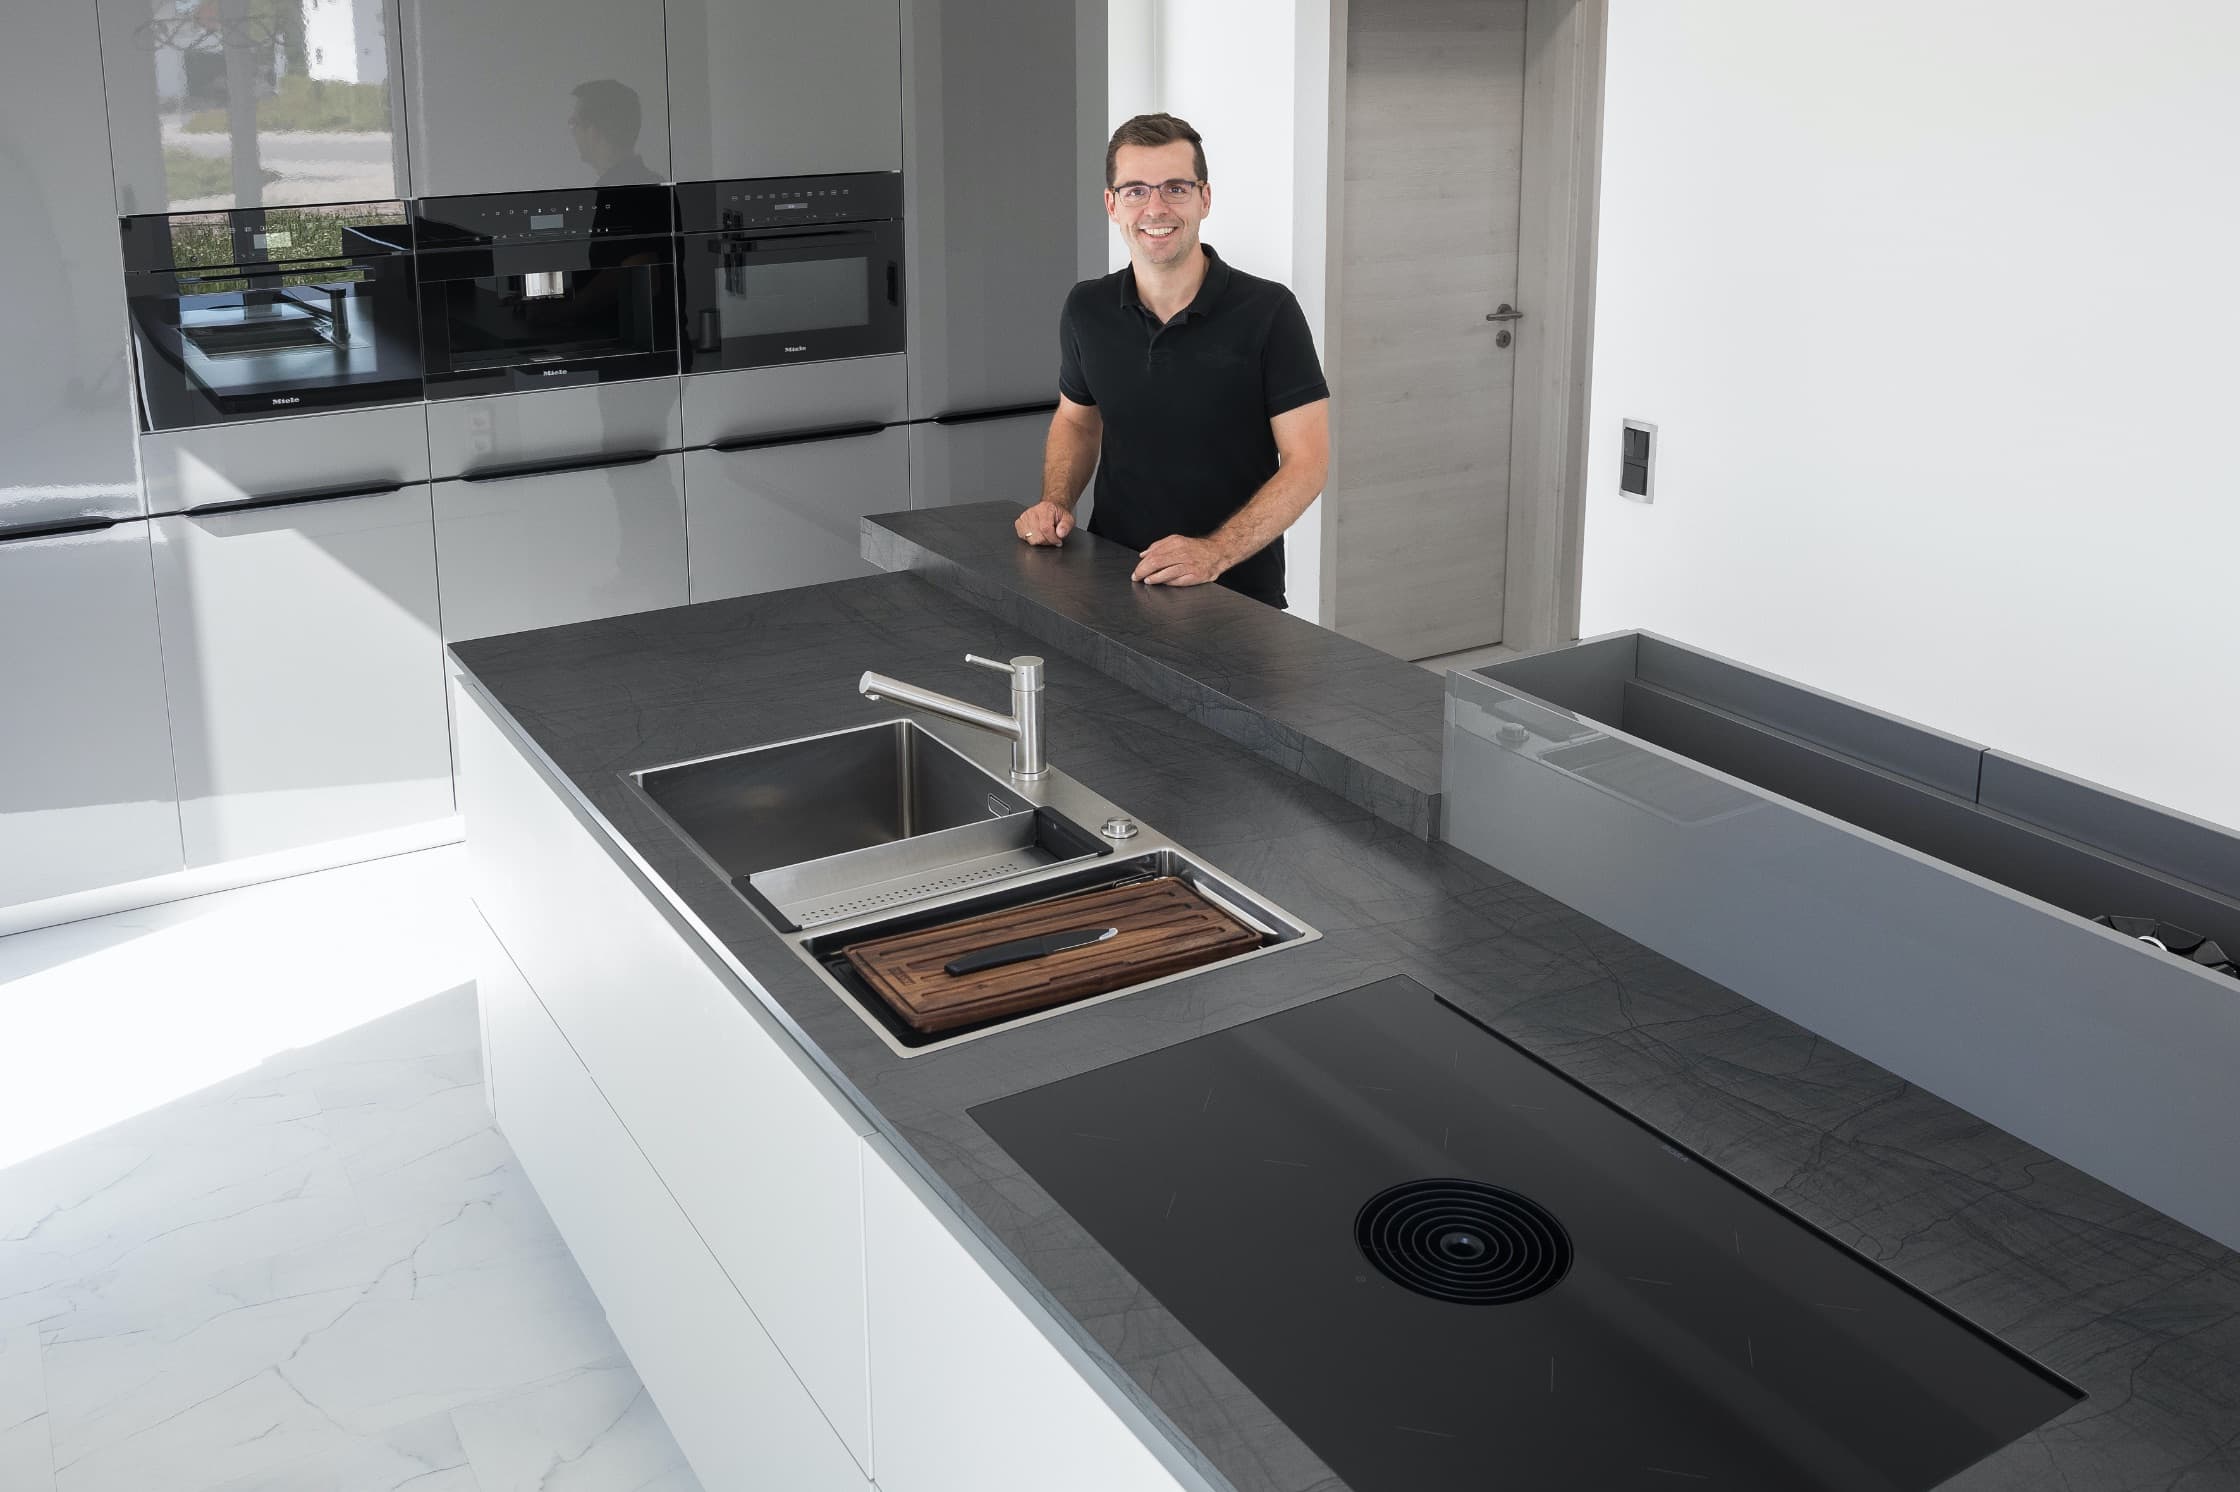 Grau-weiße Küche mit Kochinsel und ausziehbarer Arbeitsplatte